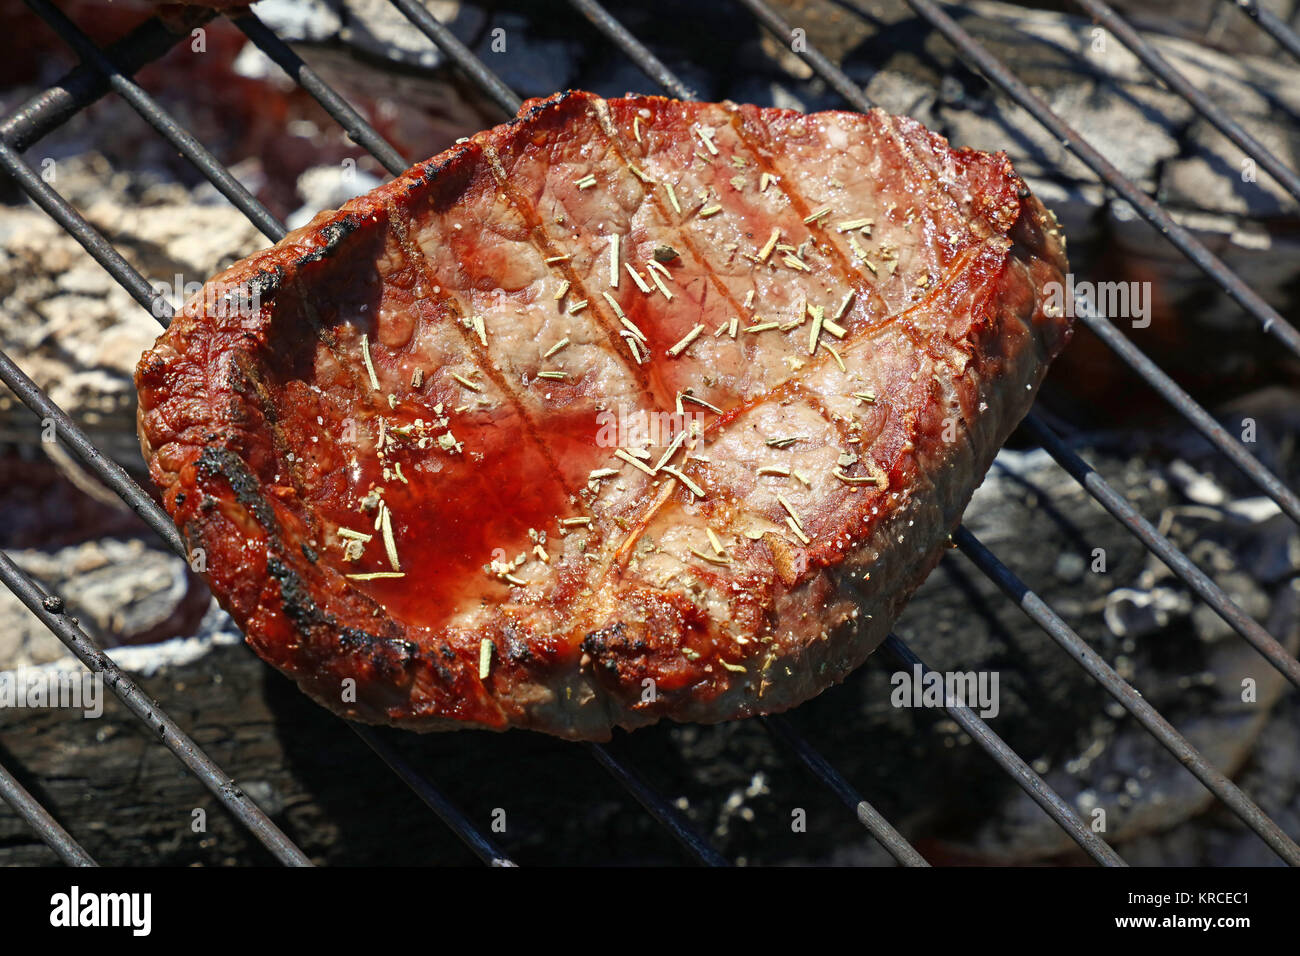 Raro grigliate di carne di manzo per la cottura su barbecue grill Foto Stock